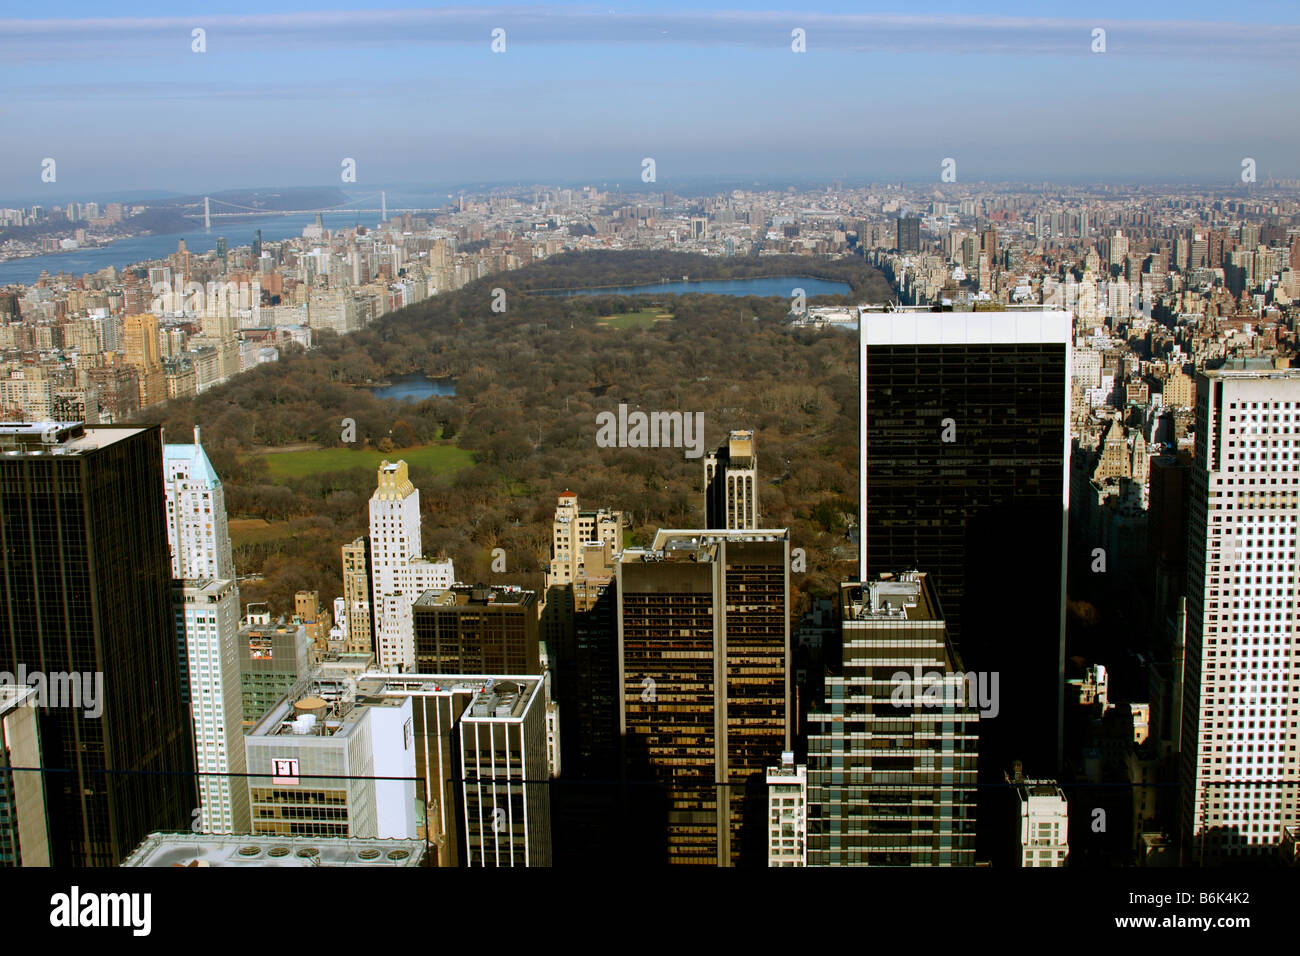 Mirando al norte de Central Park y alrededores, visto desde la parte superior de la cubierta de observación de Rock, la ciudad de Nueva York Foto de stock